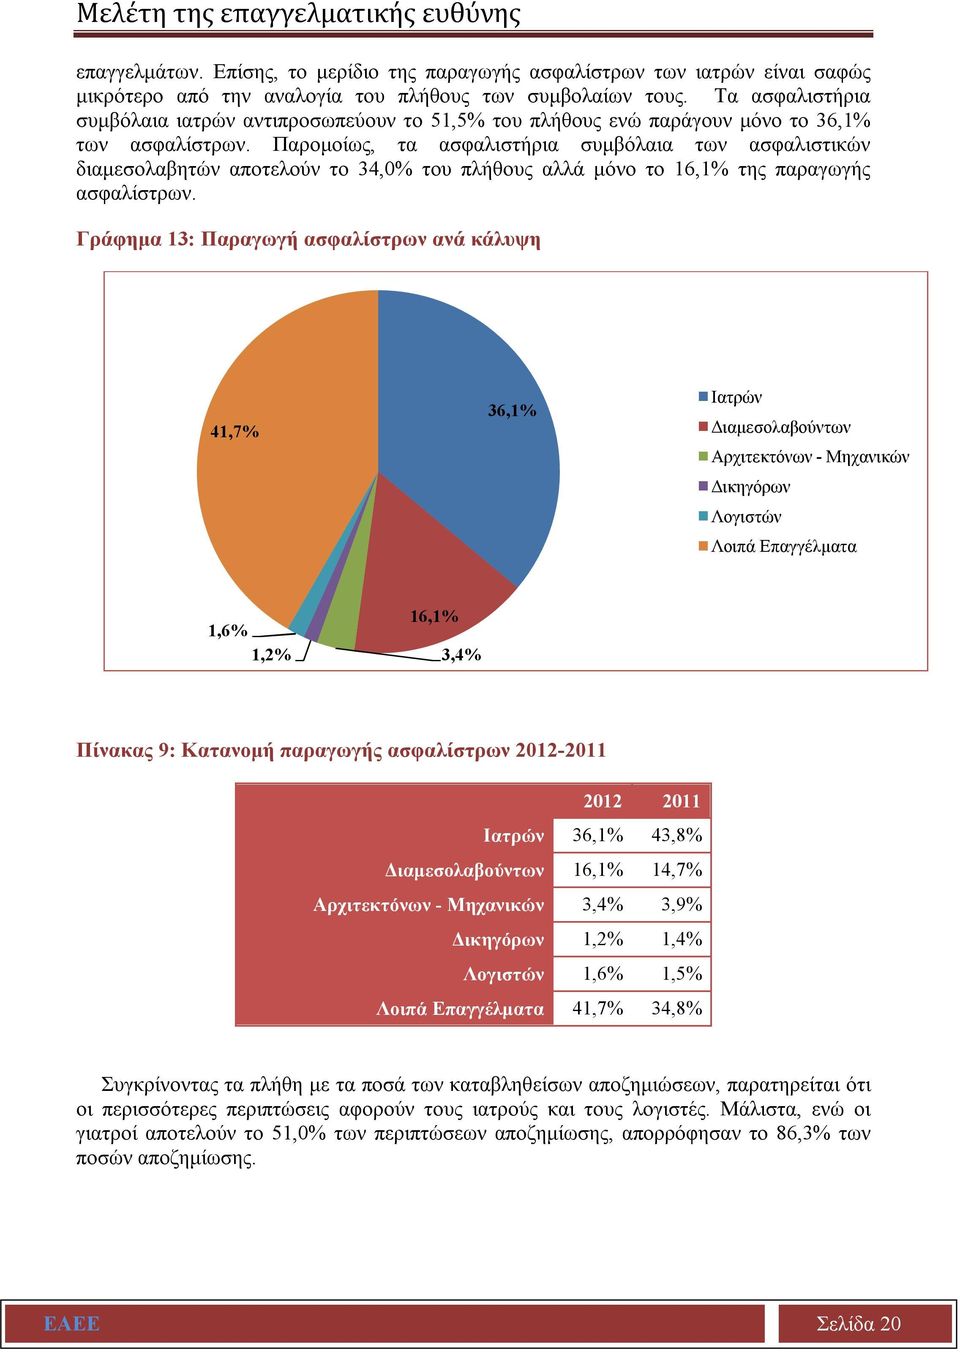 Παρομοίως, τα ασφαλιστήρια συμβόλαια των ασφαλιστικών διαμεσολαβητών αποτελούν το 34,0% του πλήθους αλλά μόνο το 16,1% της παραγωγής ασφαλίστρων.